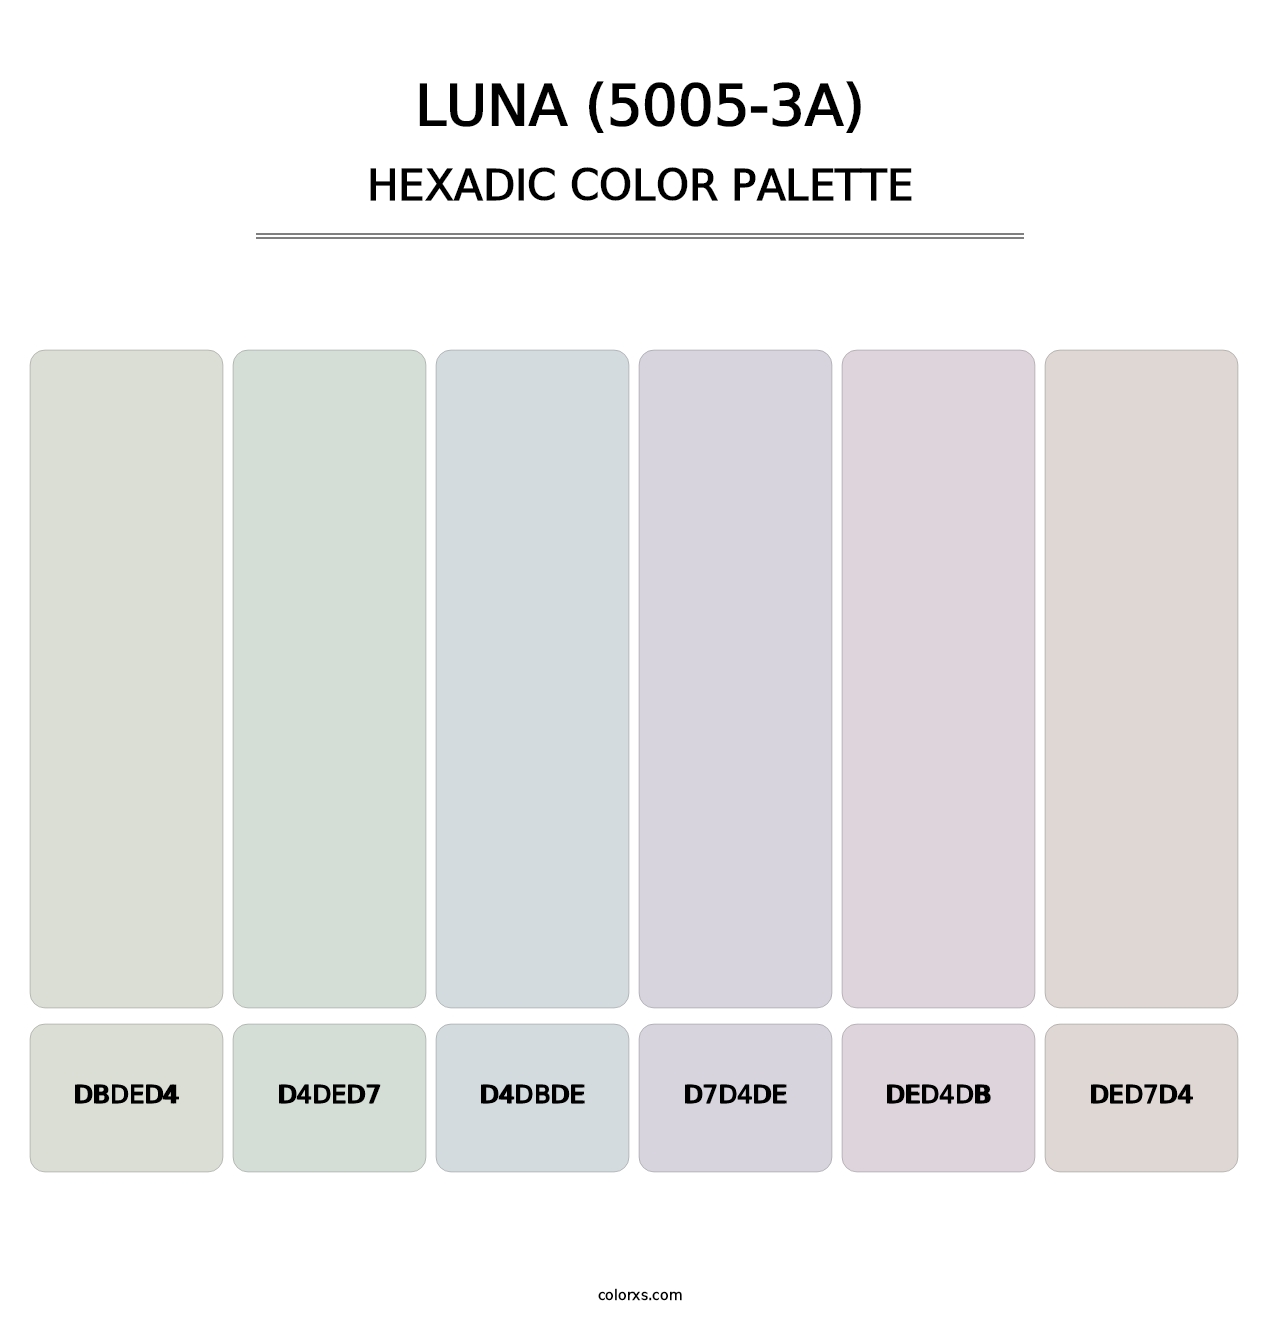 Luna (5005-3A) - Hexadic Color Palette